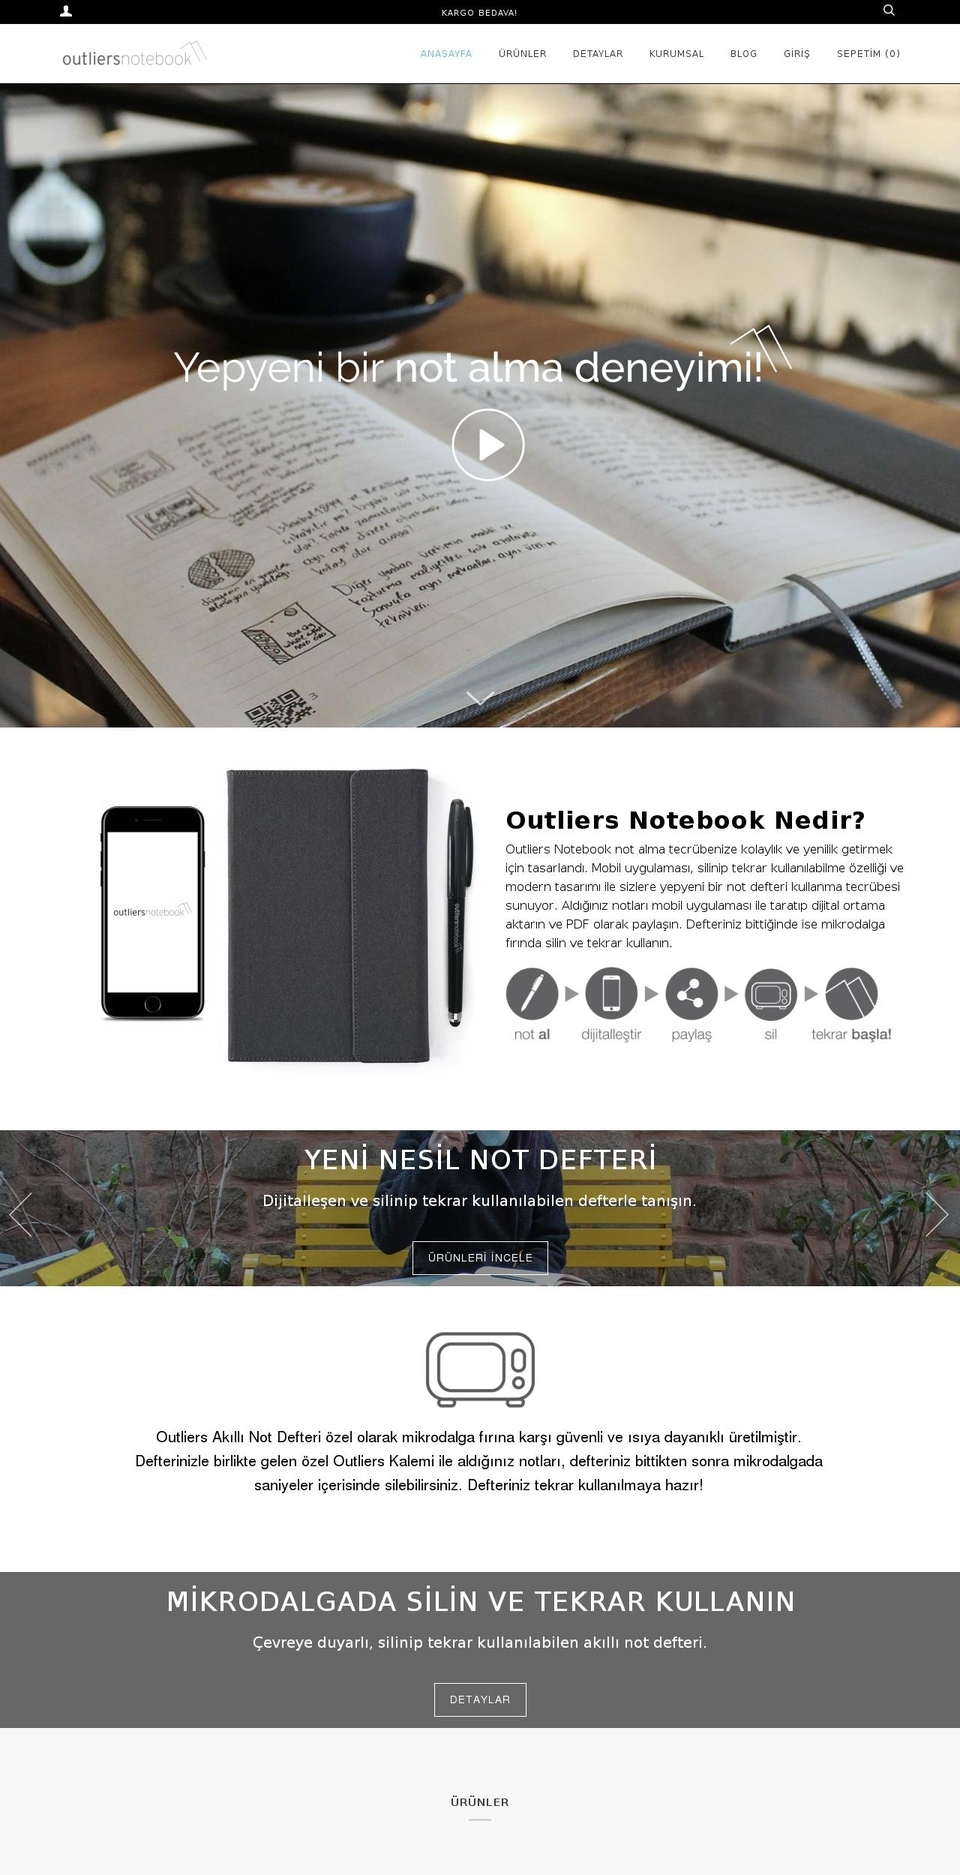 outliersnotebook.com.tr shopify website screenshot